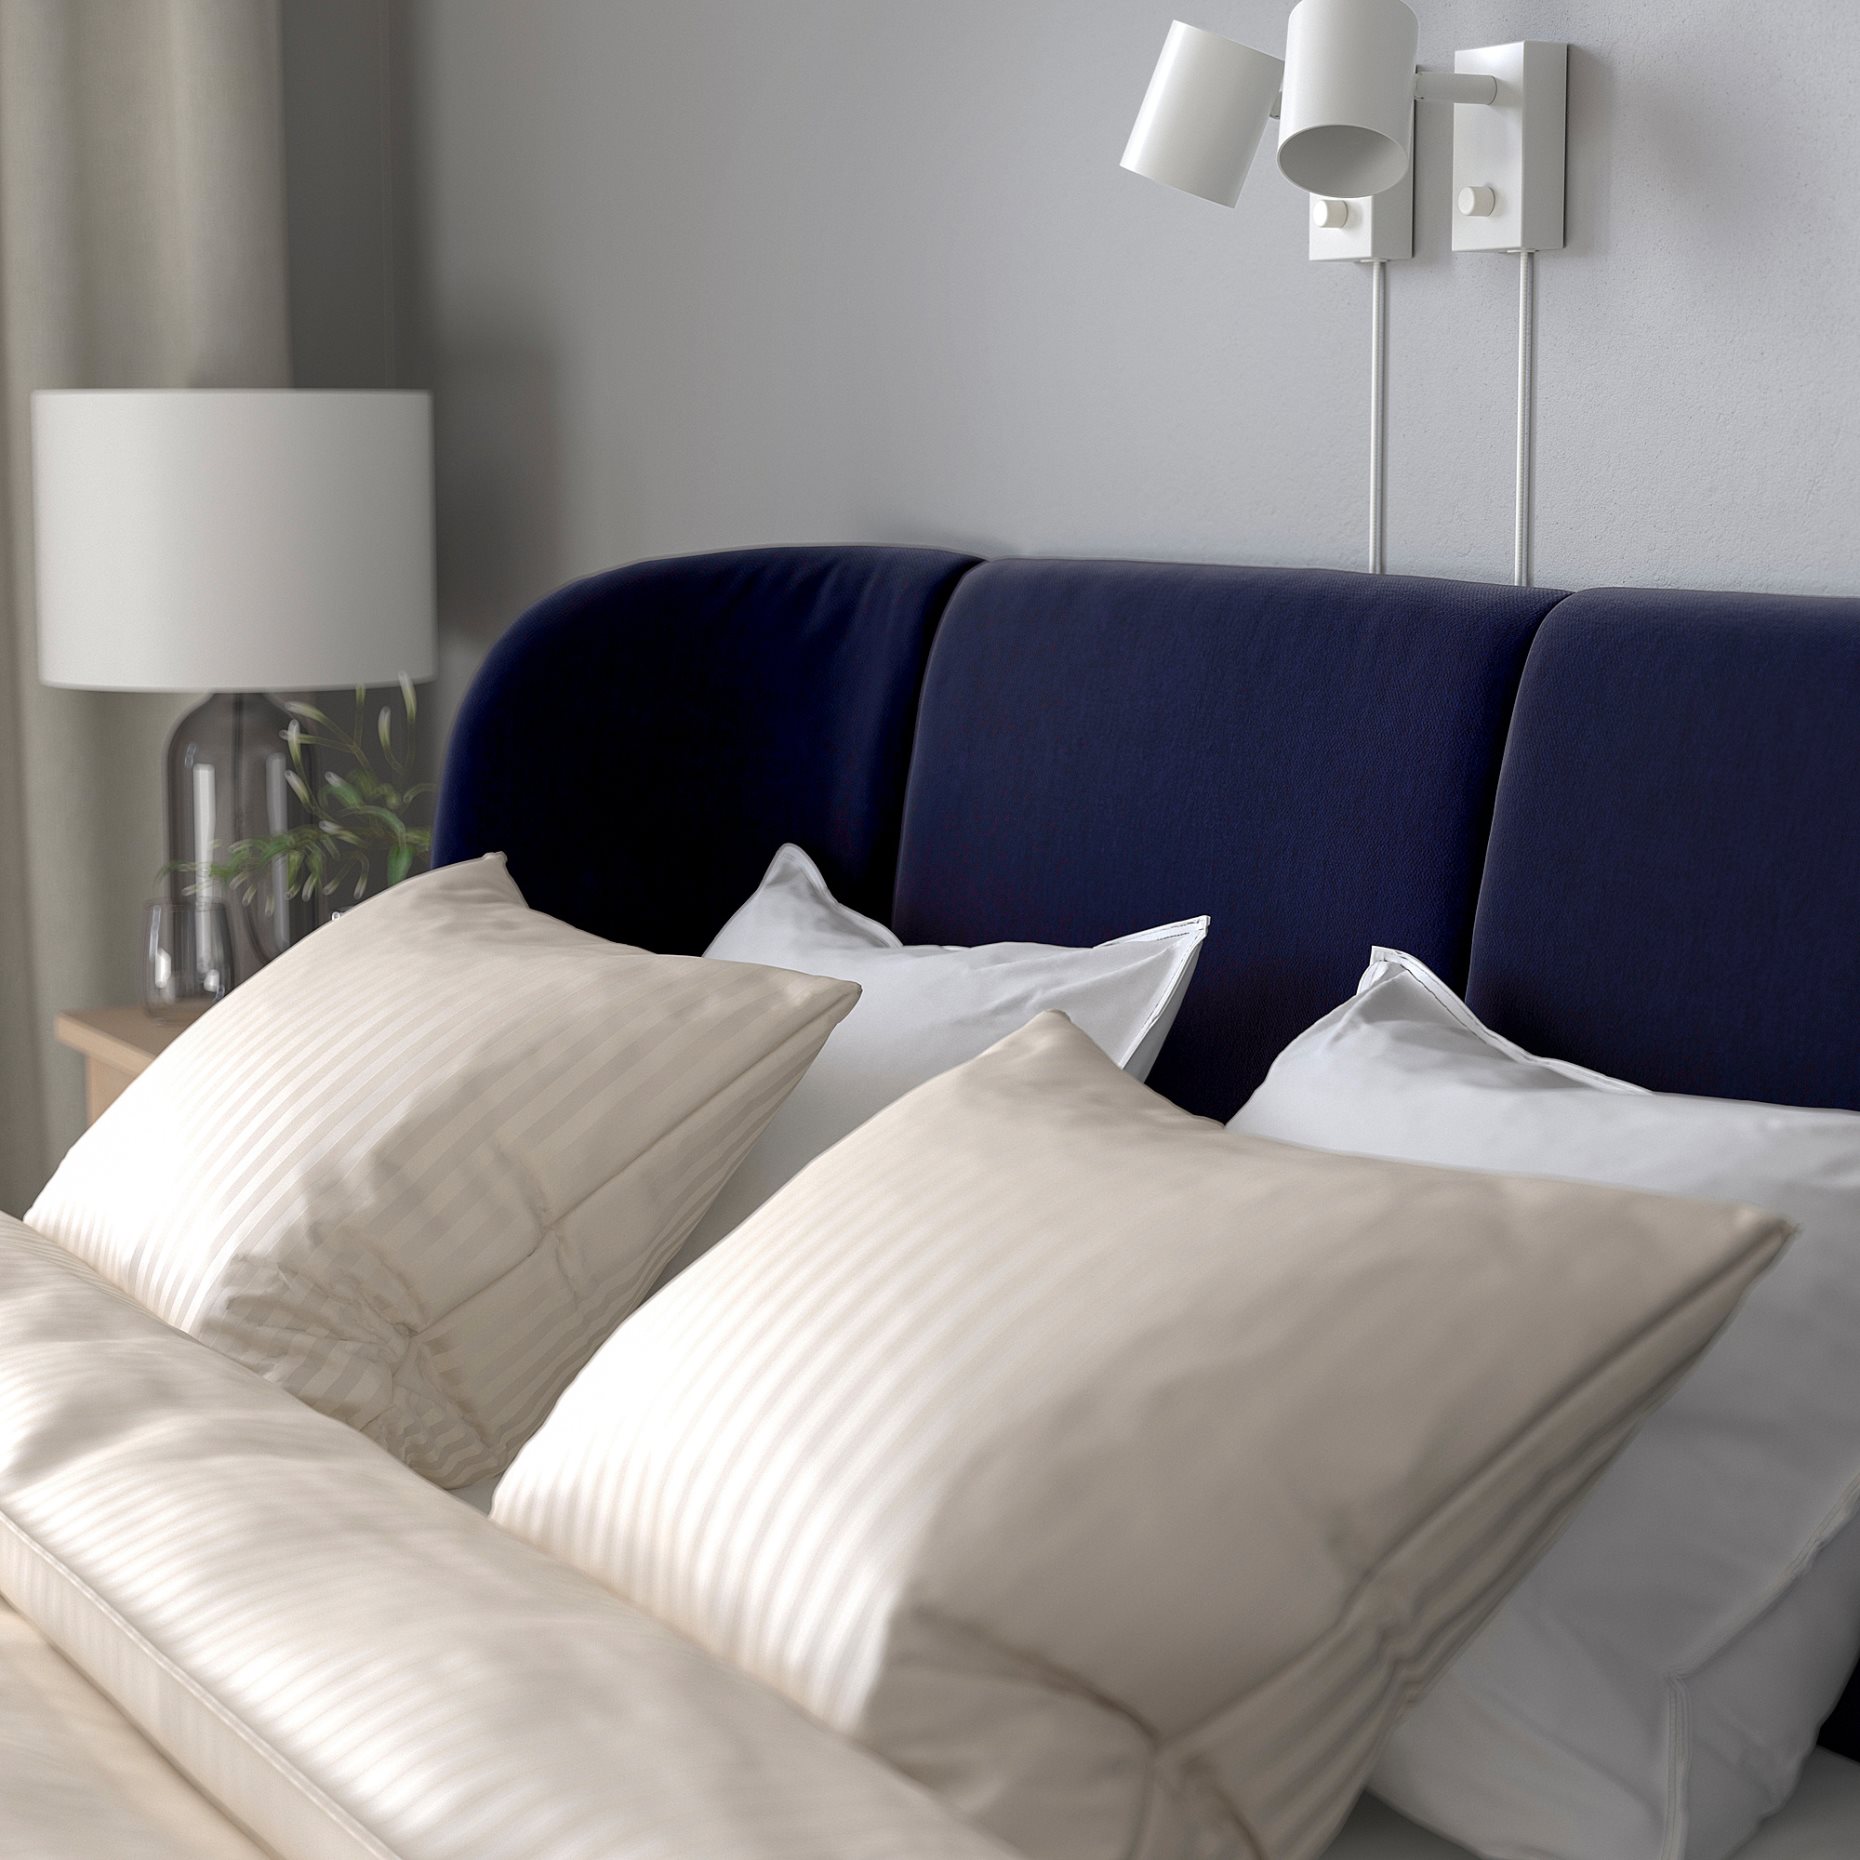 TUFJORD, upholstered bed frame, 160x200 cm, 195.553.73